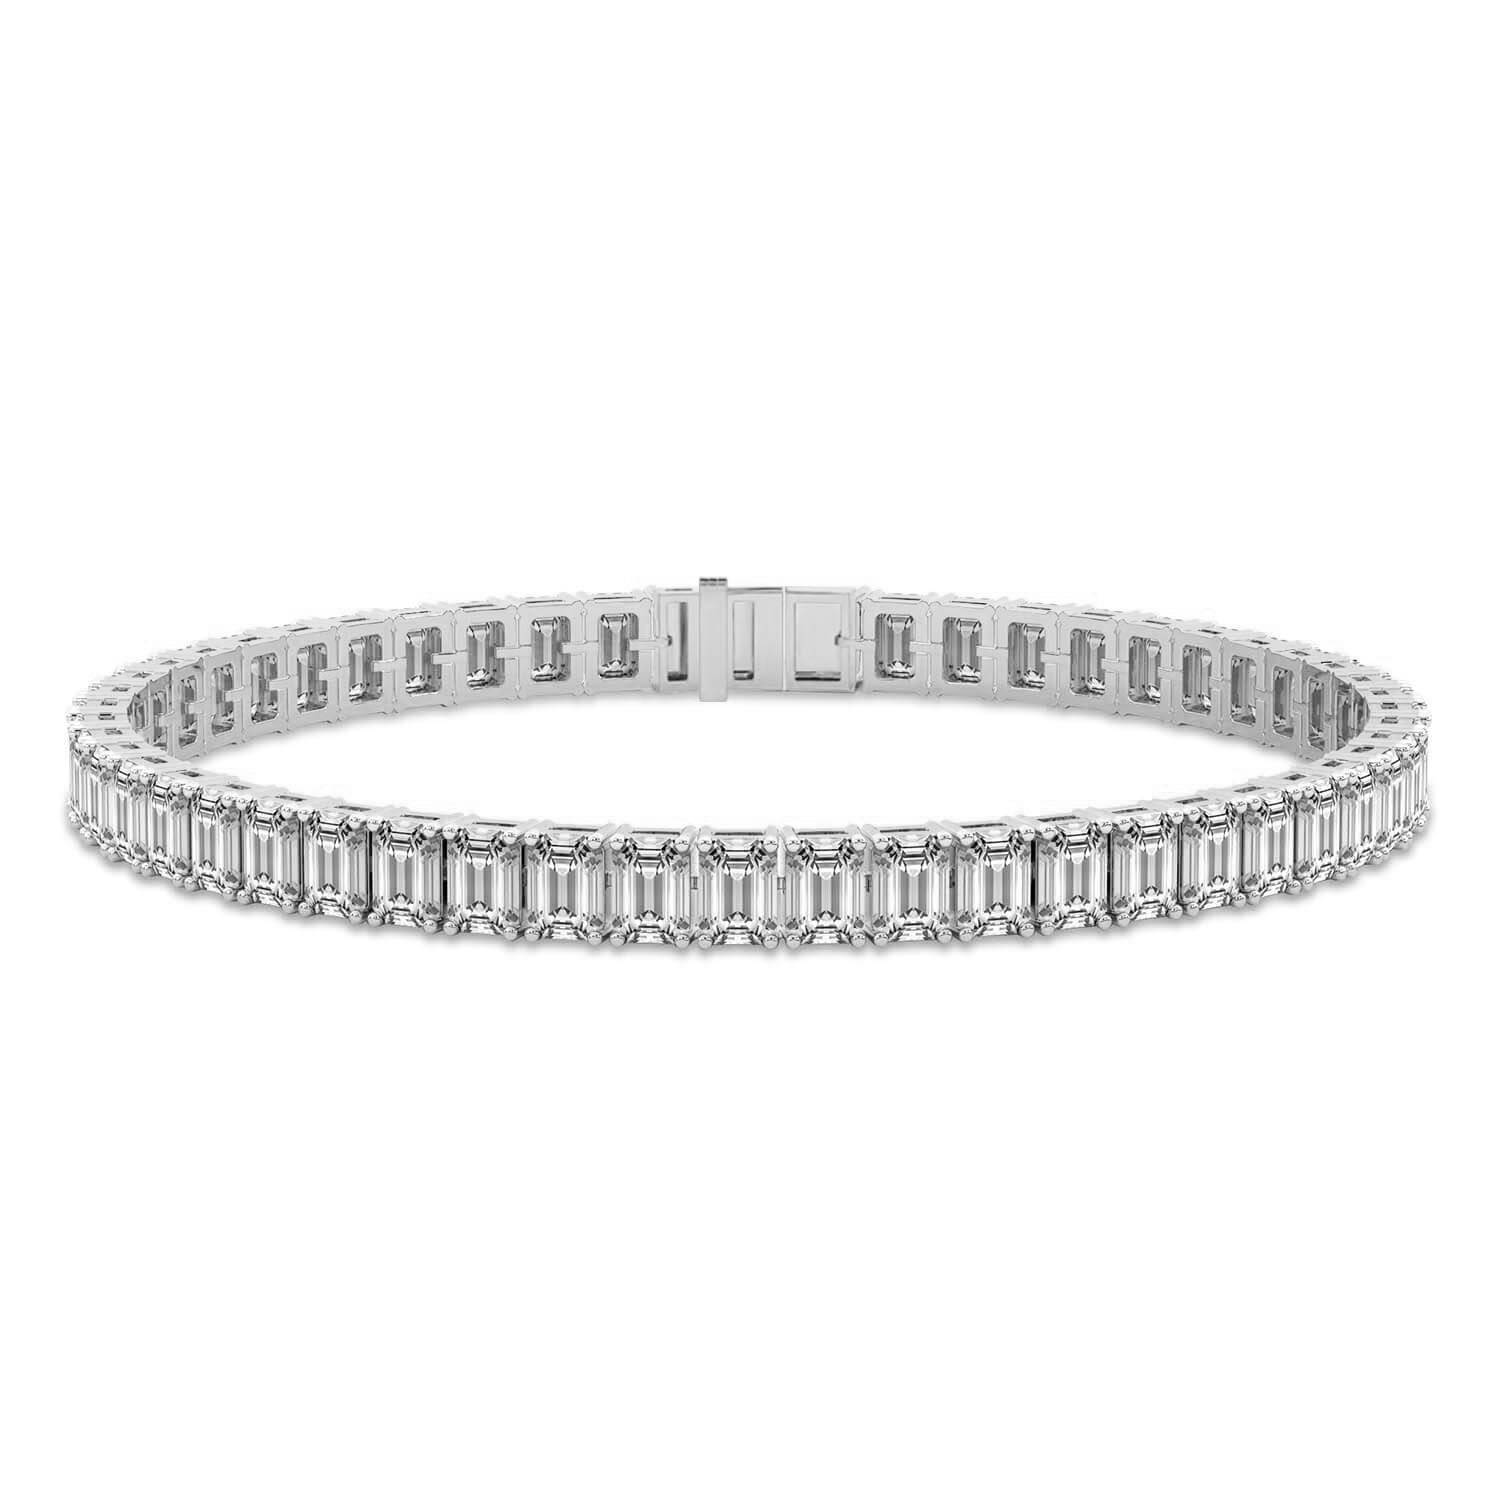 Celine Emerald Lab Diamond Tennis Bracelet front view